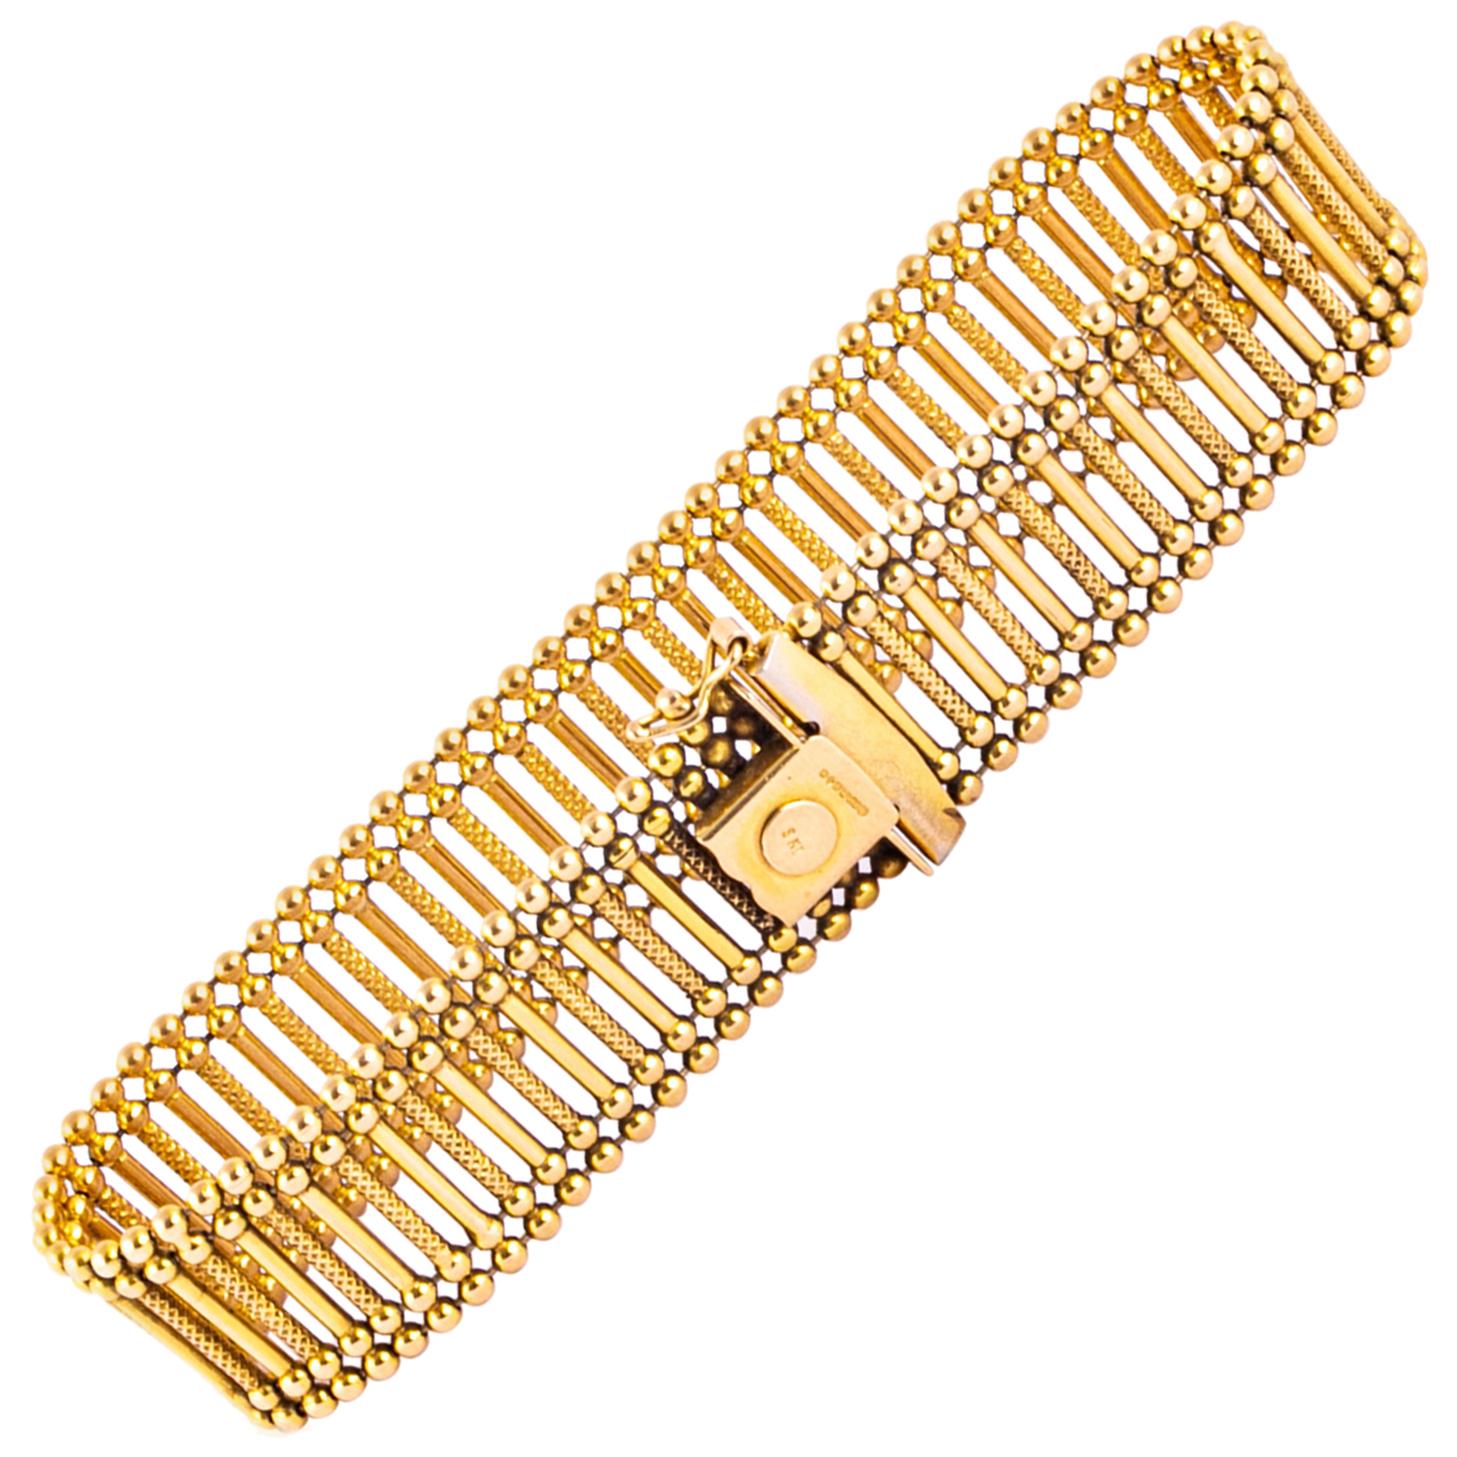 Vintage 9 Carat Gold Cuff Bracelet For Sale